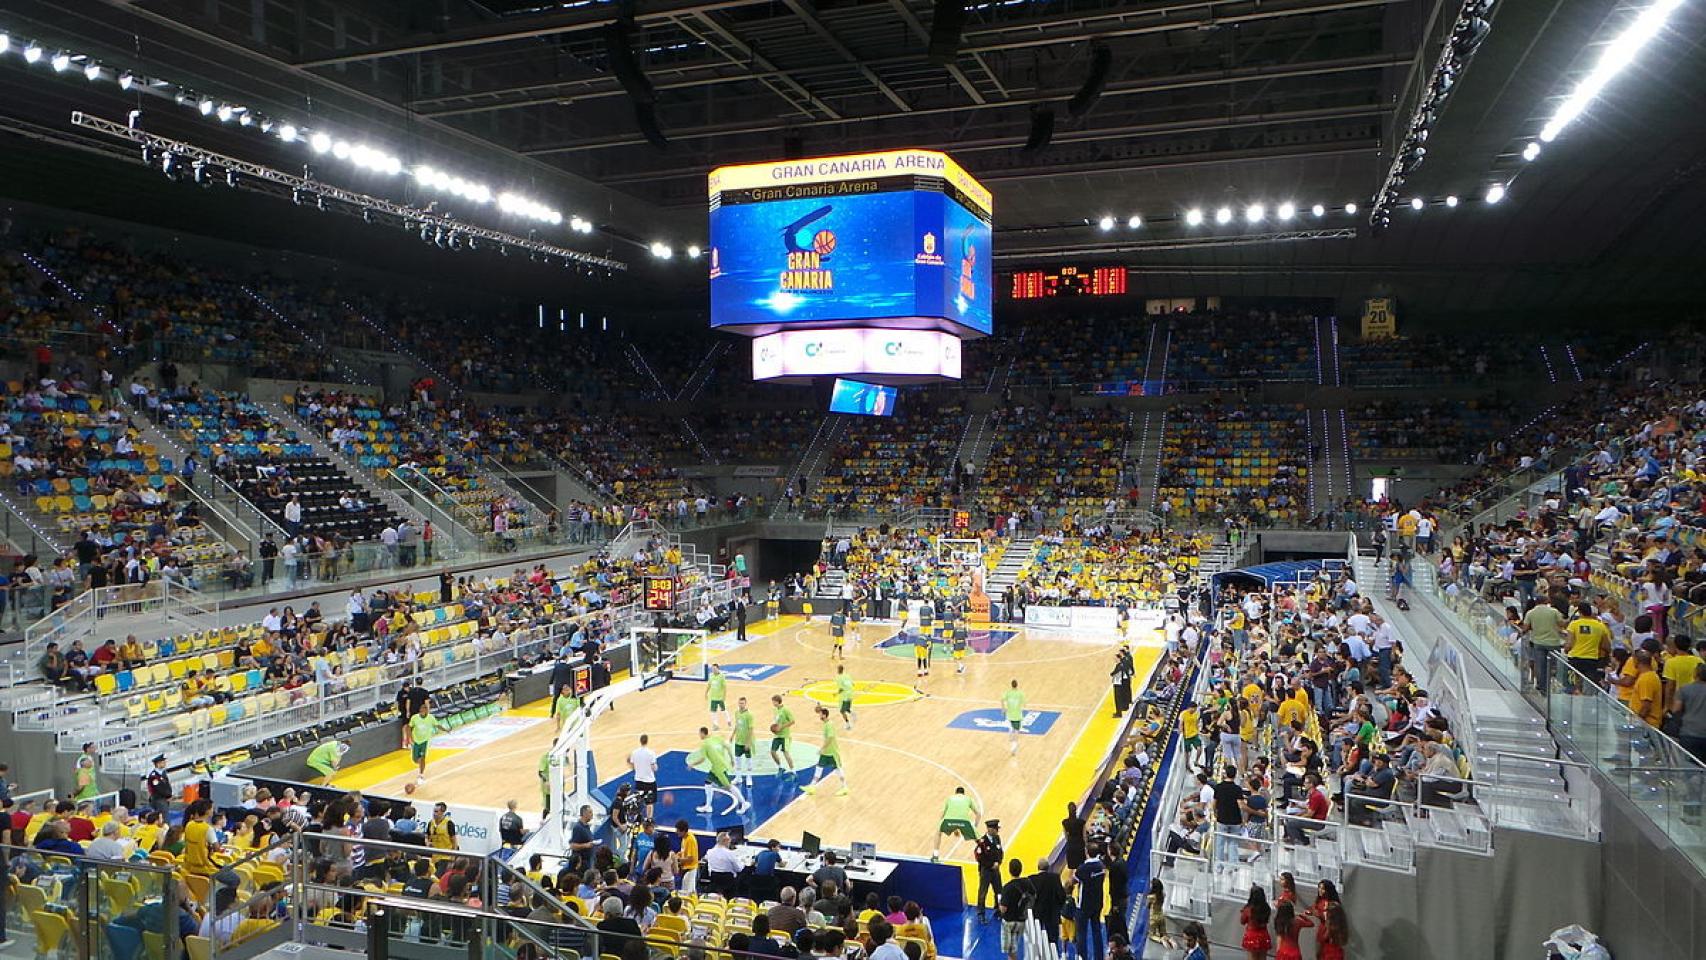 El Gran Canaria Arena, escenario de la Copa del Rey 2018.